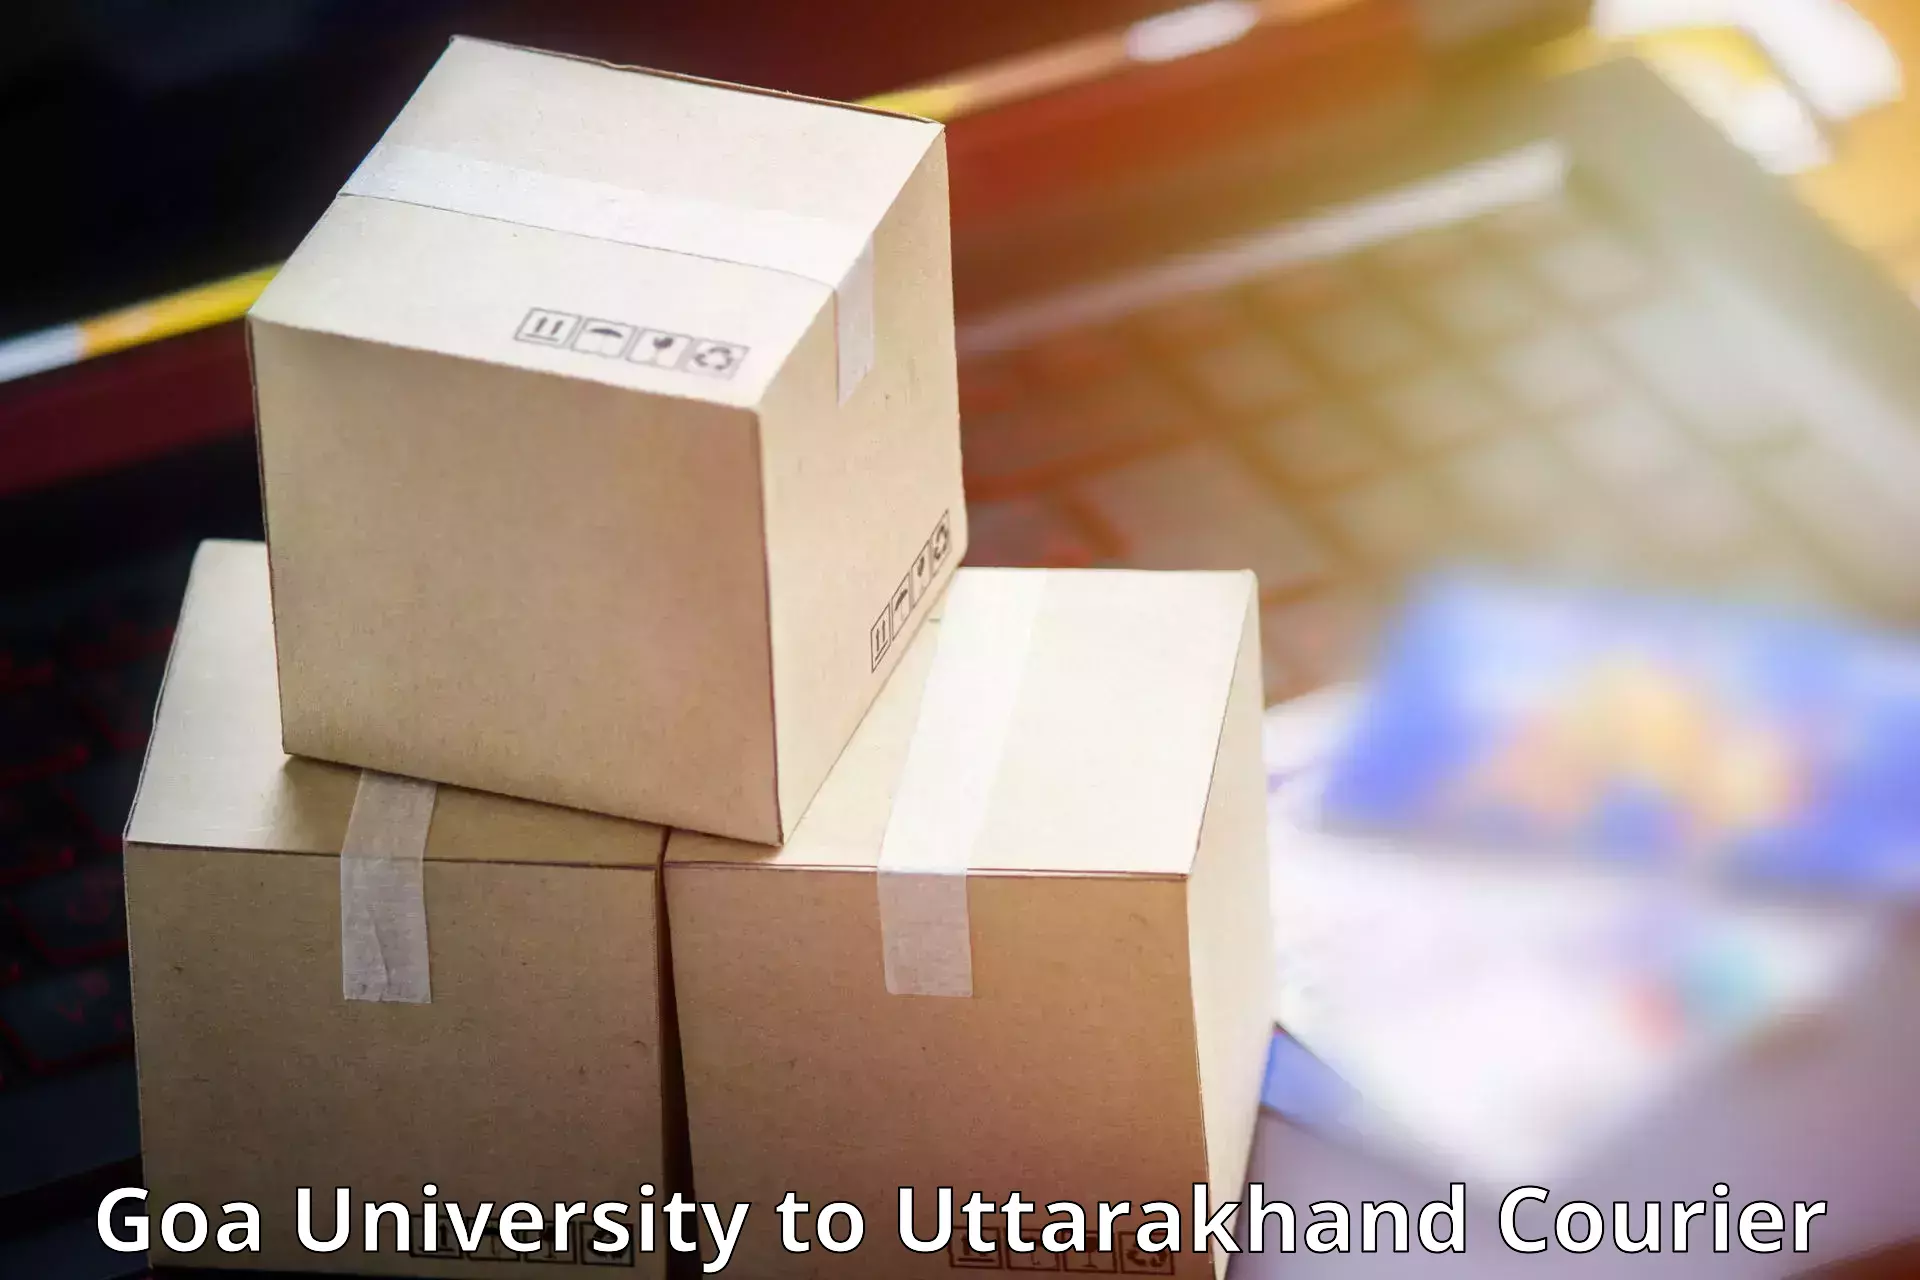 Efficient parcel service Goa University to Mussoorie